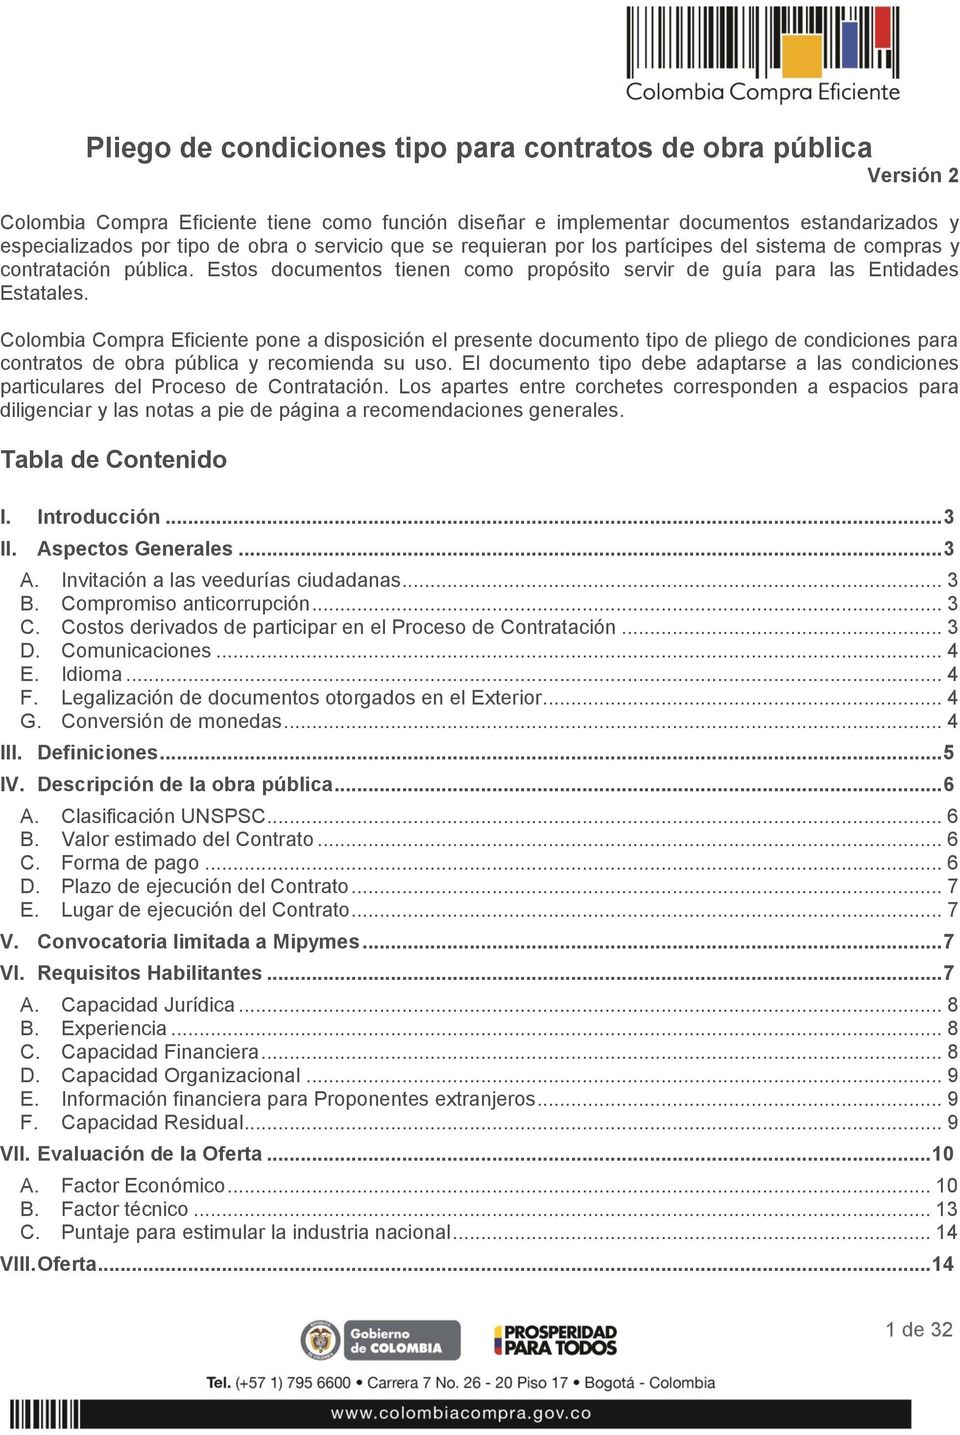 Colombia Compra Eficiente pone a disposición el presente documento tipo de pliego de condiciones para contratos de obra pública y recomienda su uso.